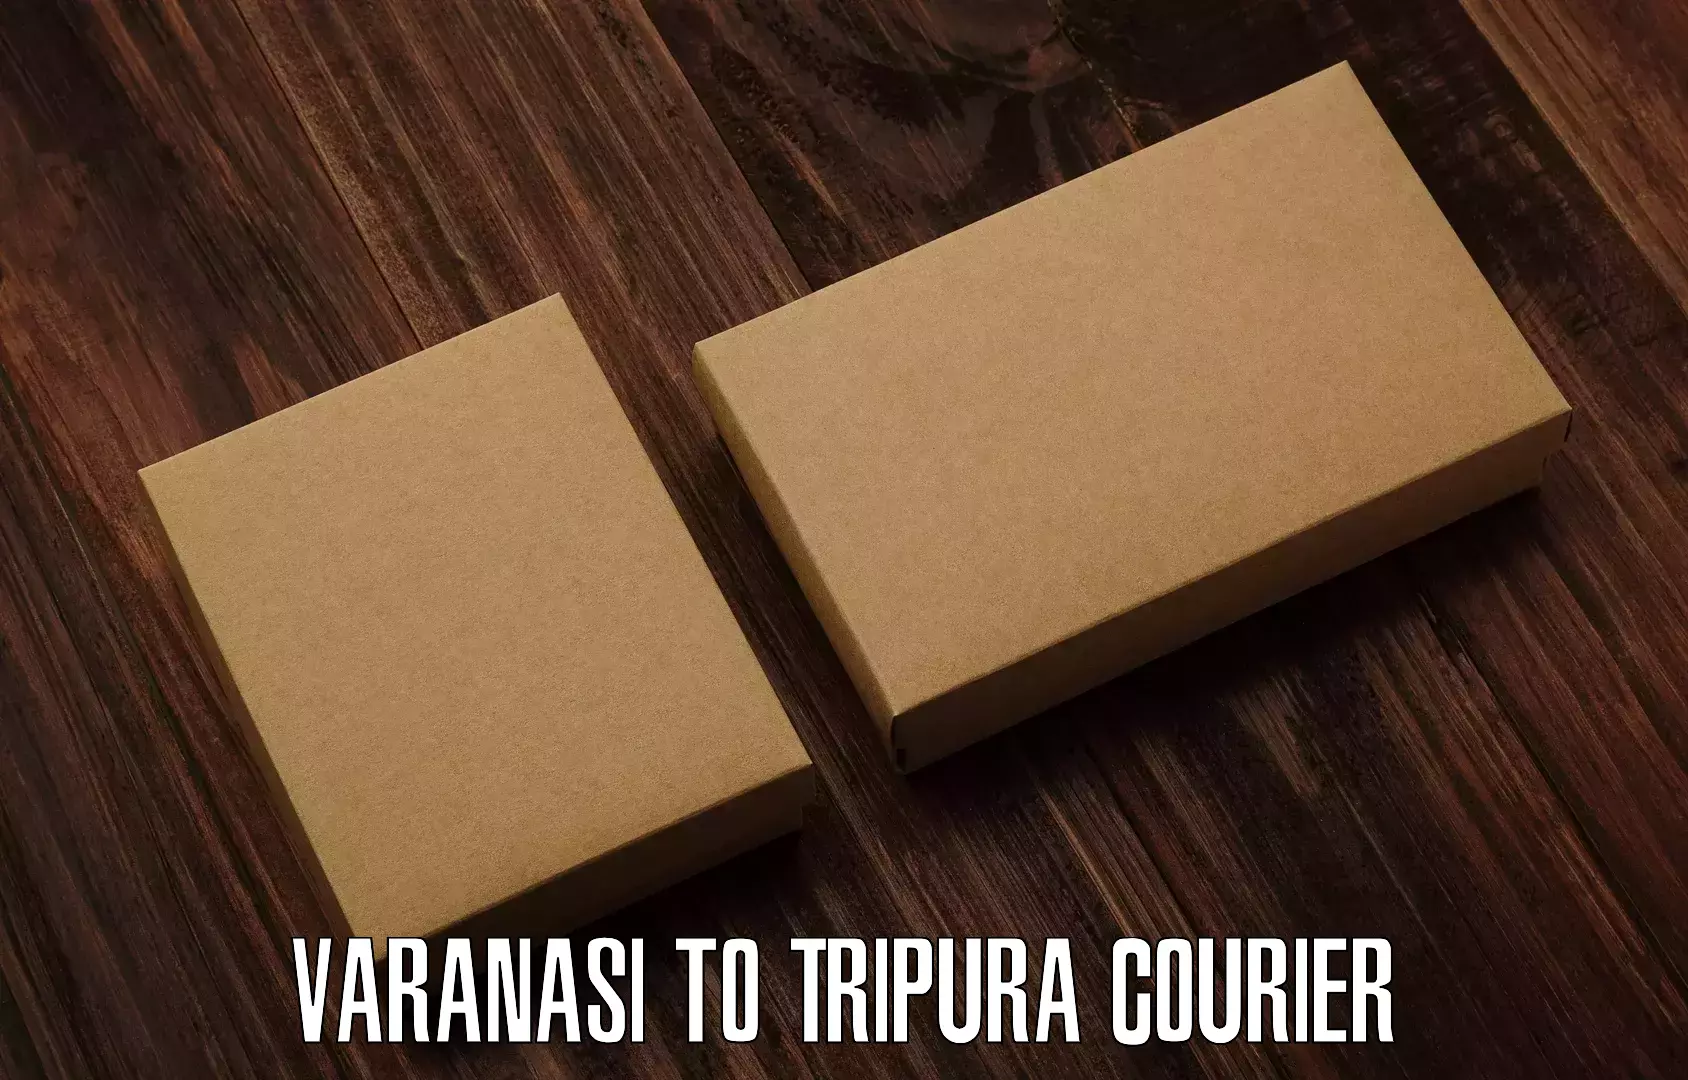 Full-service courier options Varanasi to Khowai